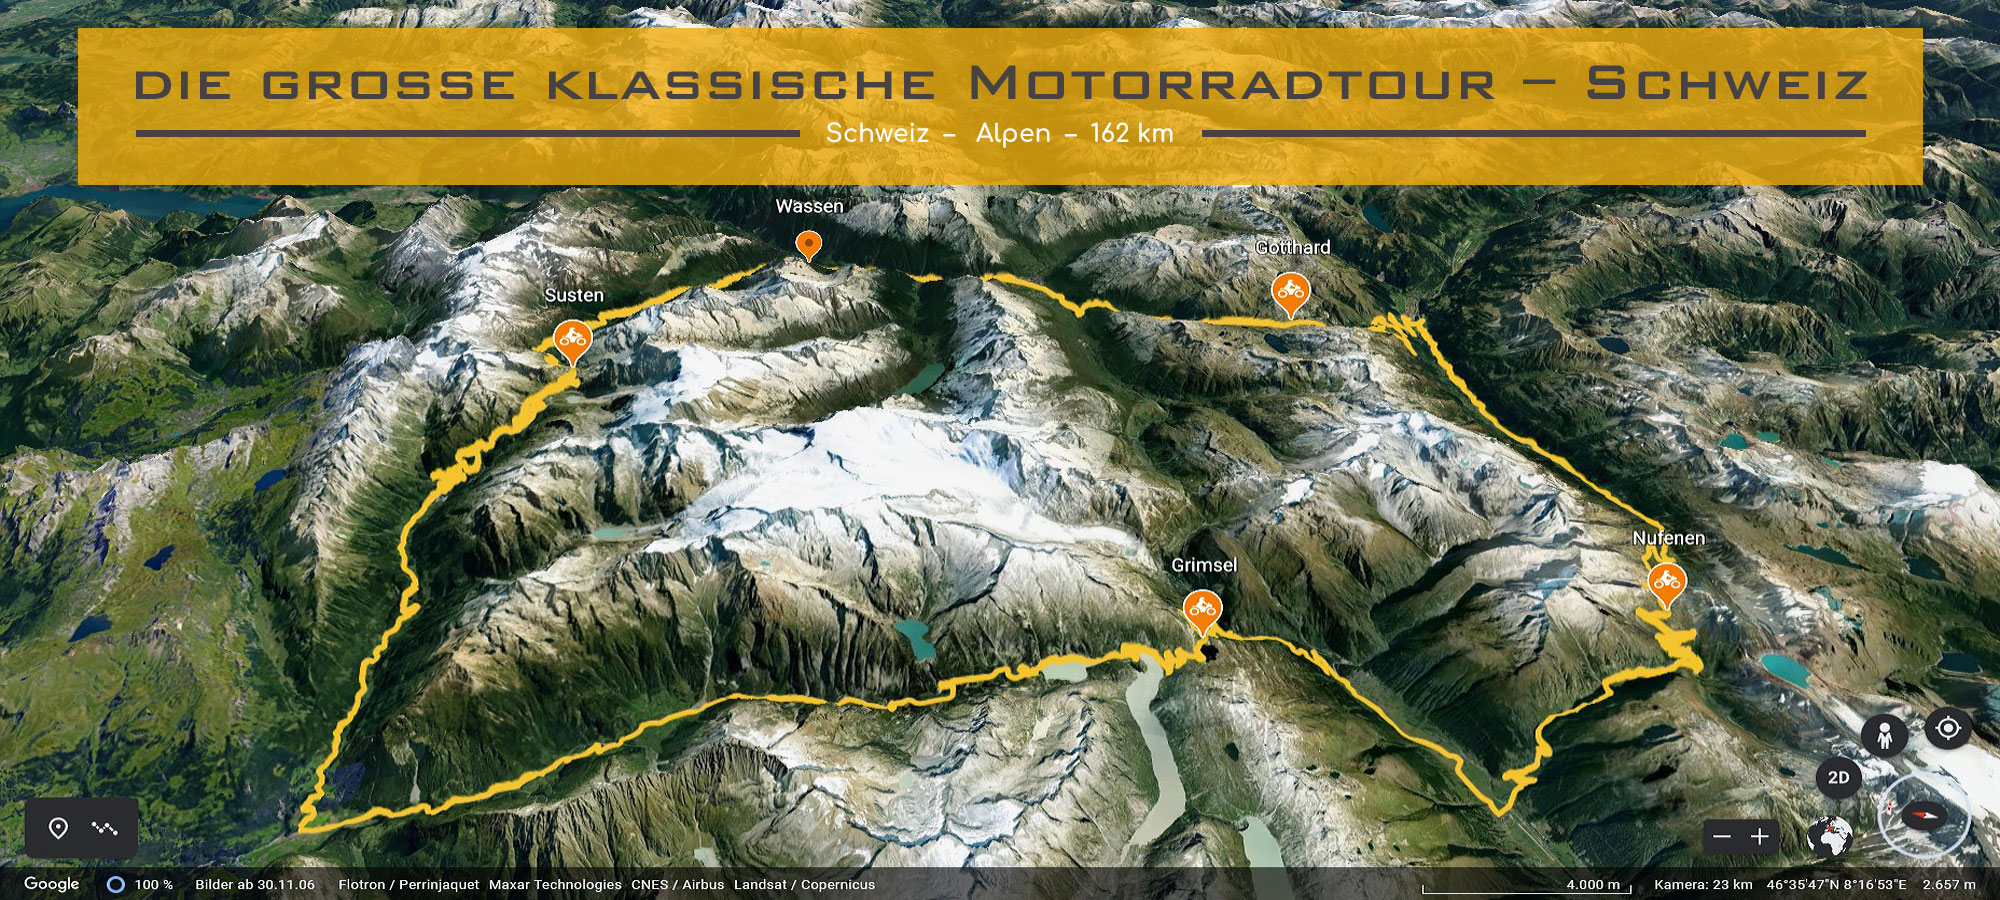 die grosse klassische Motorradtour – Schweiz